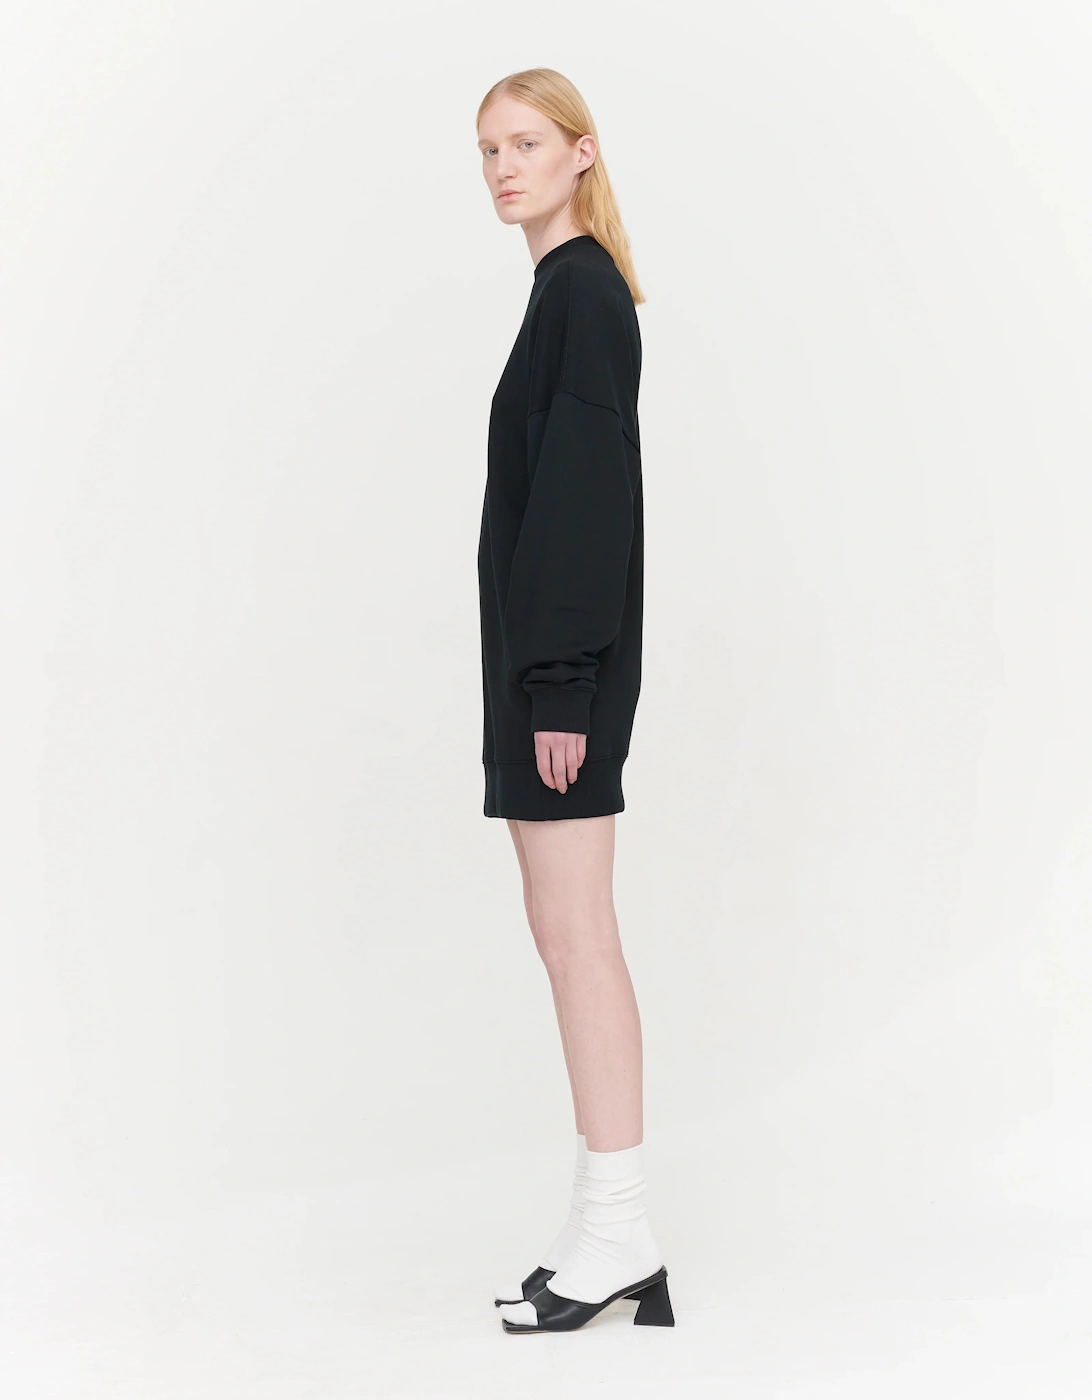 Brielle Sweatshirt Dress in Black